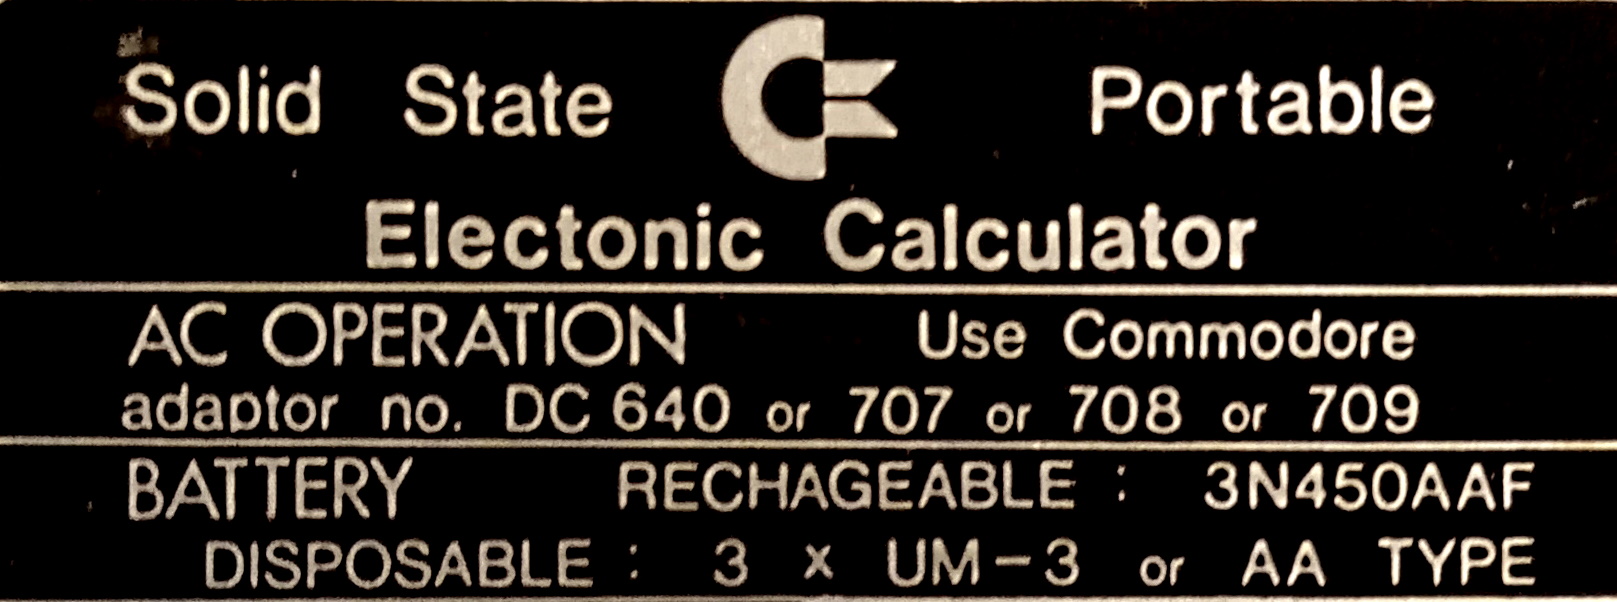 In short: Commodore calculators